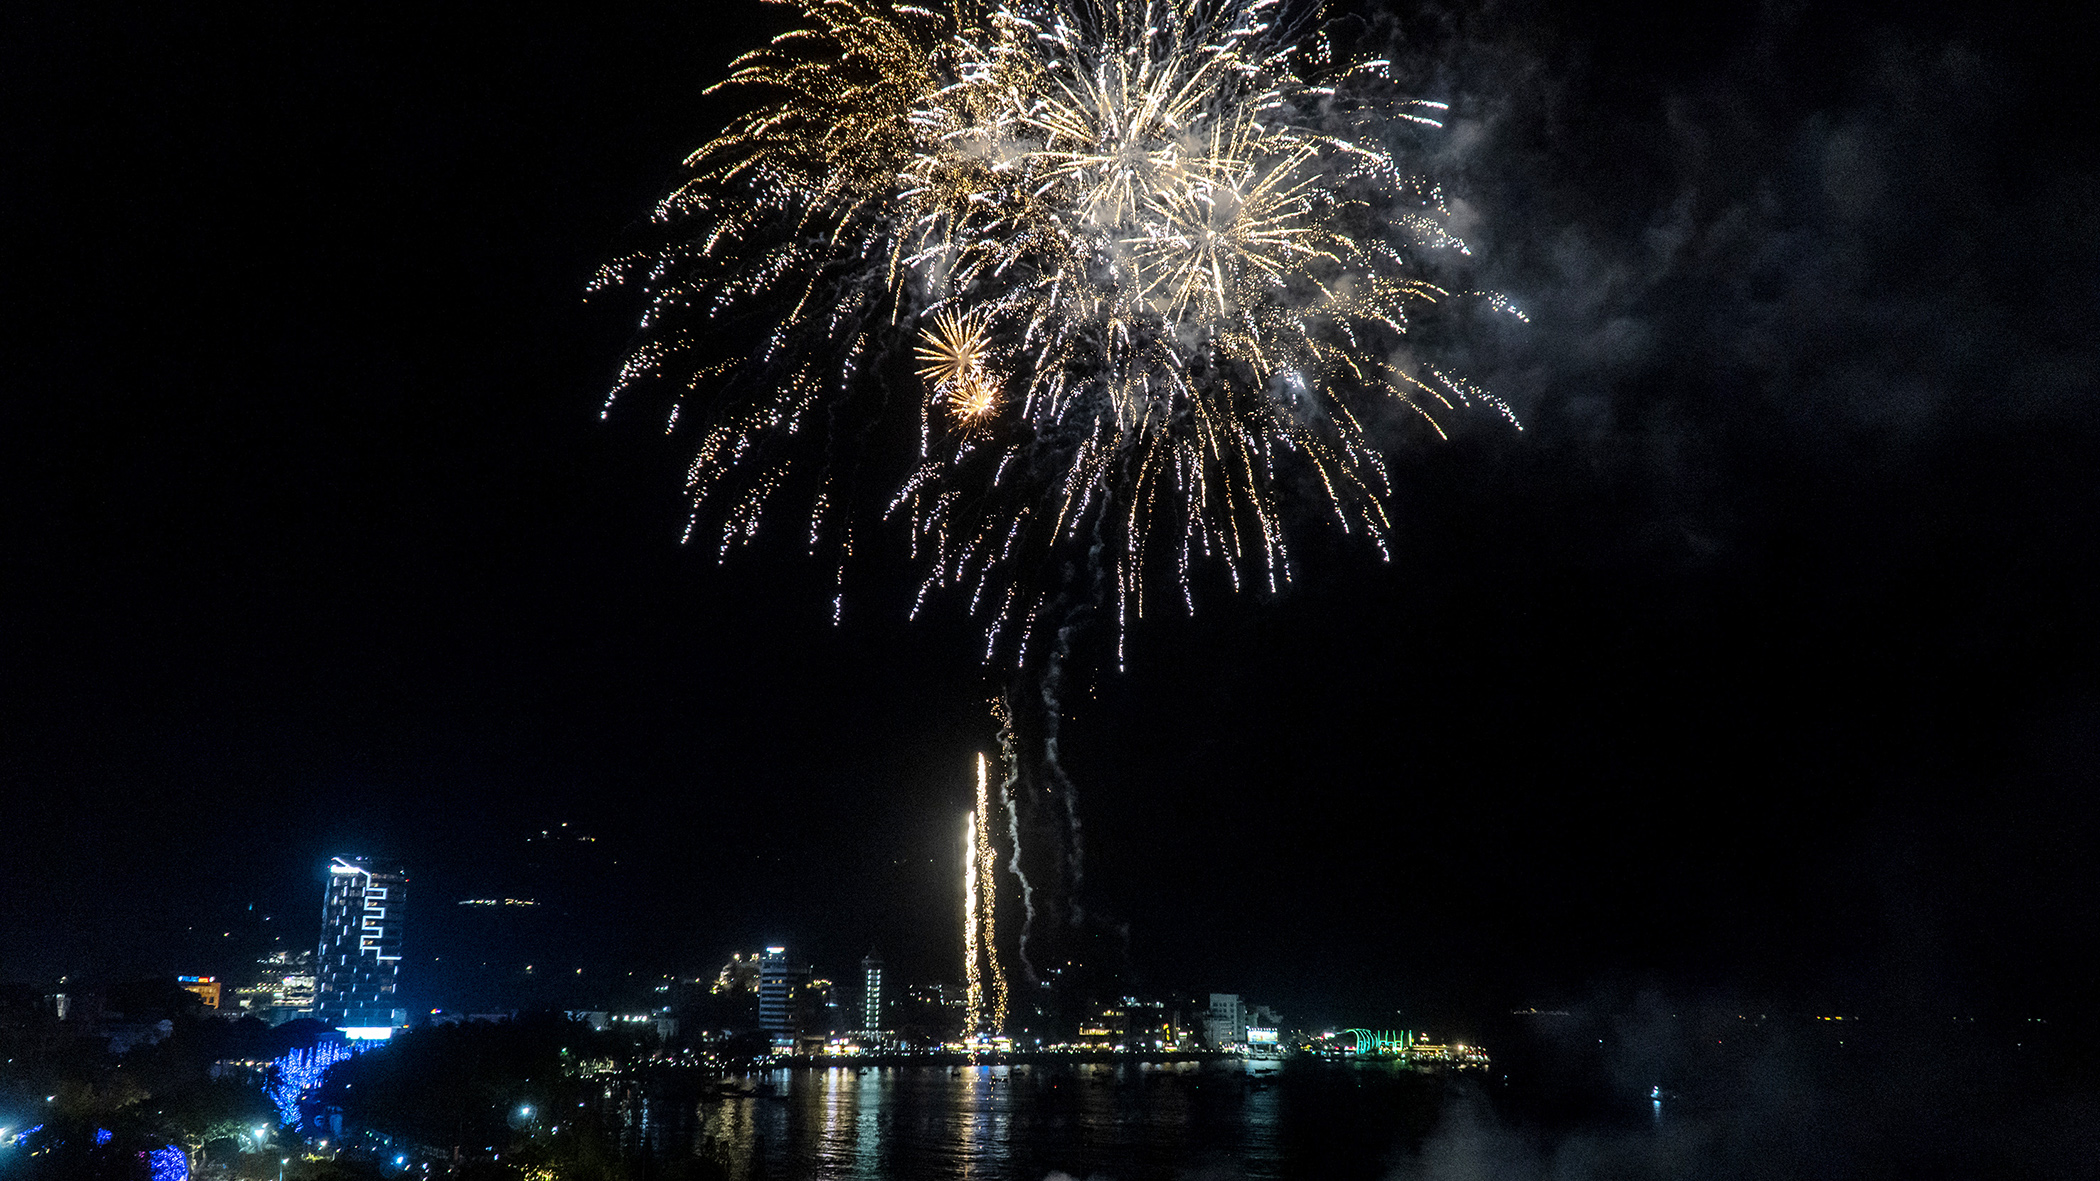 Những màn bắn pháo hoa đẹp mắt chào đón năm mới Quý Mão 2023 tại TP. Vũng Tàu. Ảnh: BẢO KHÁNH